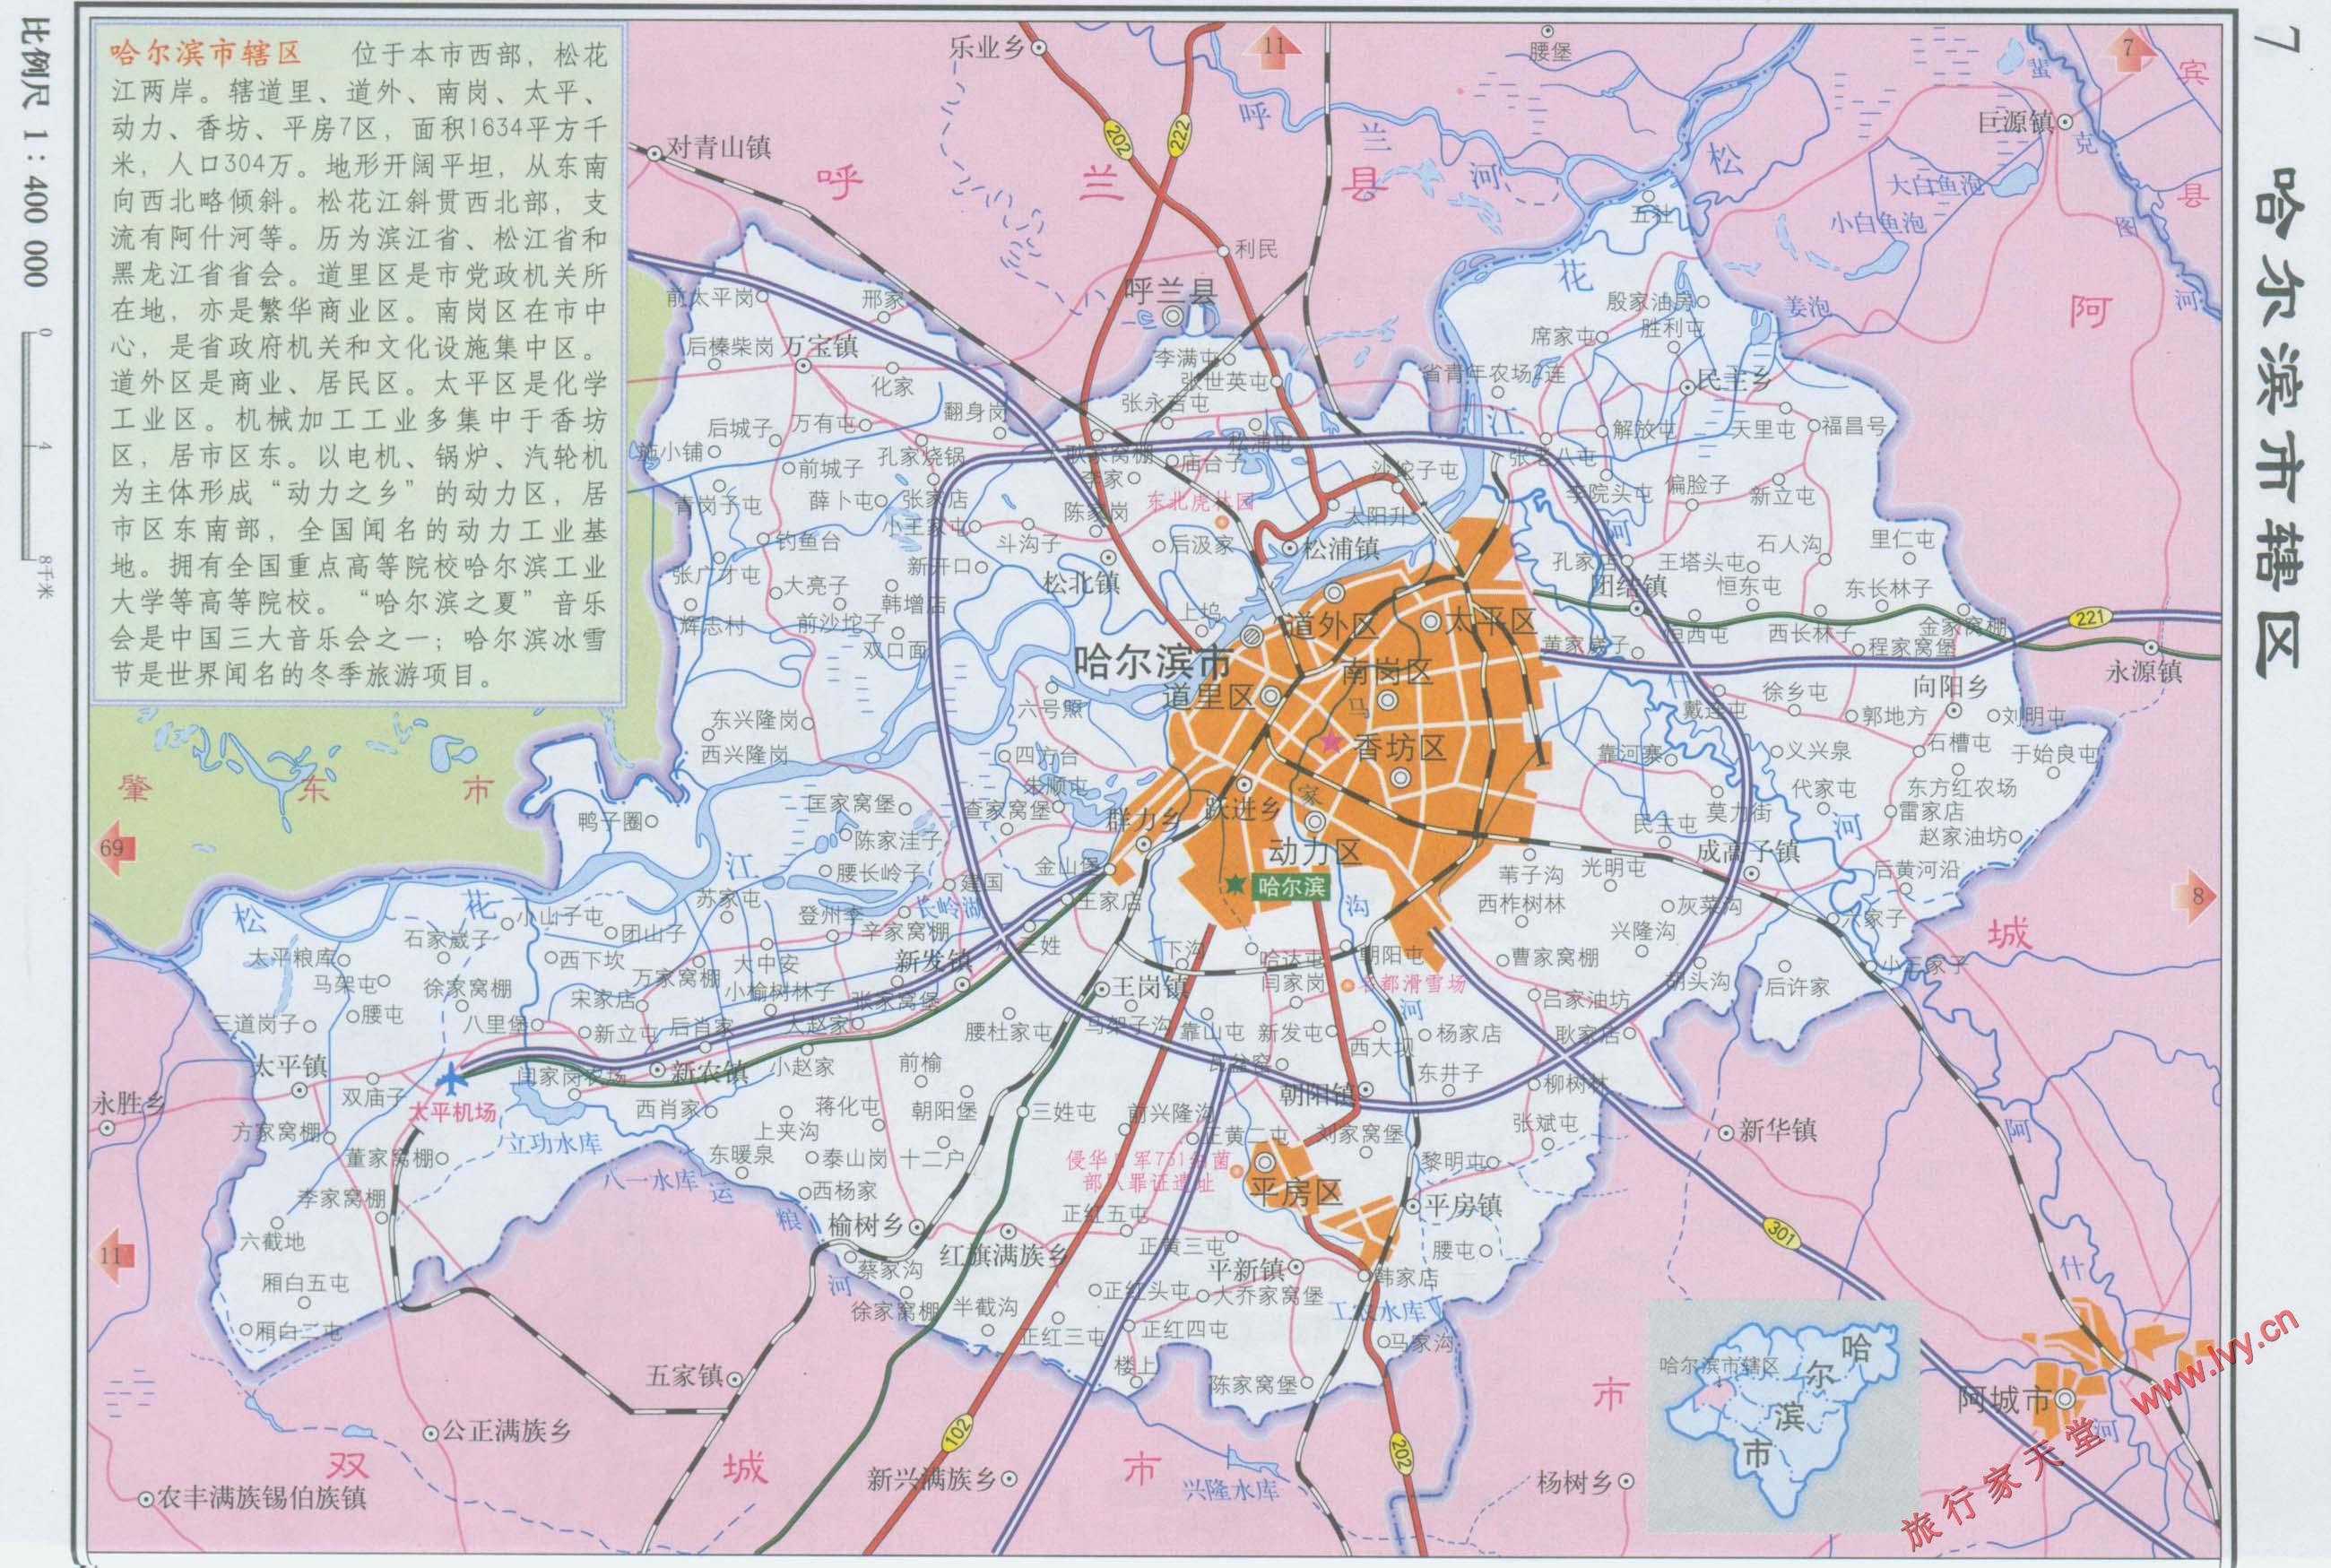 哈尔滨市地图[辖区区划]图片